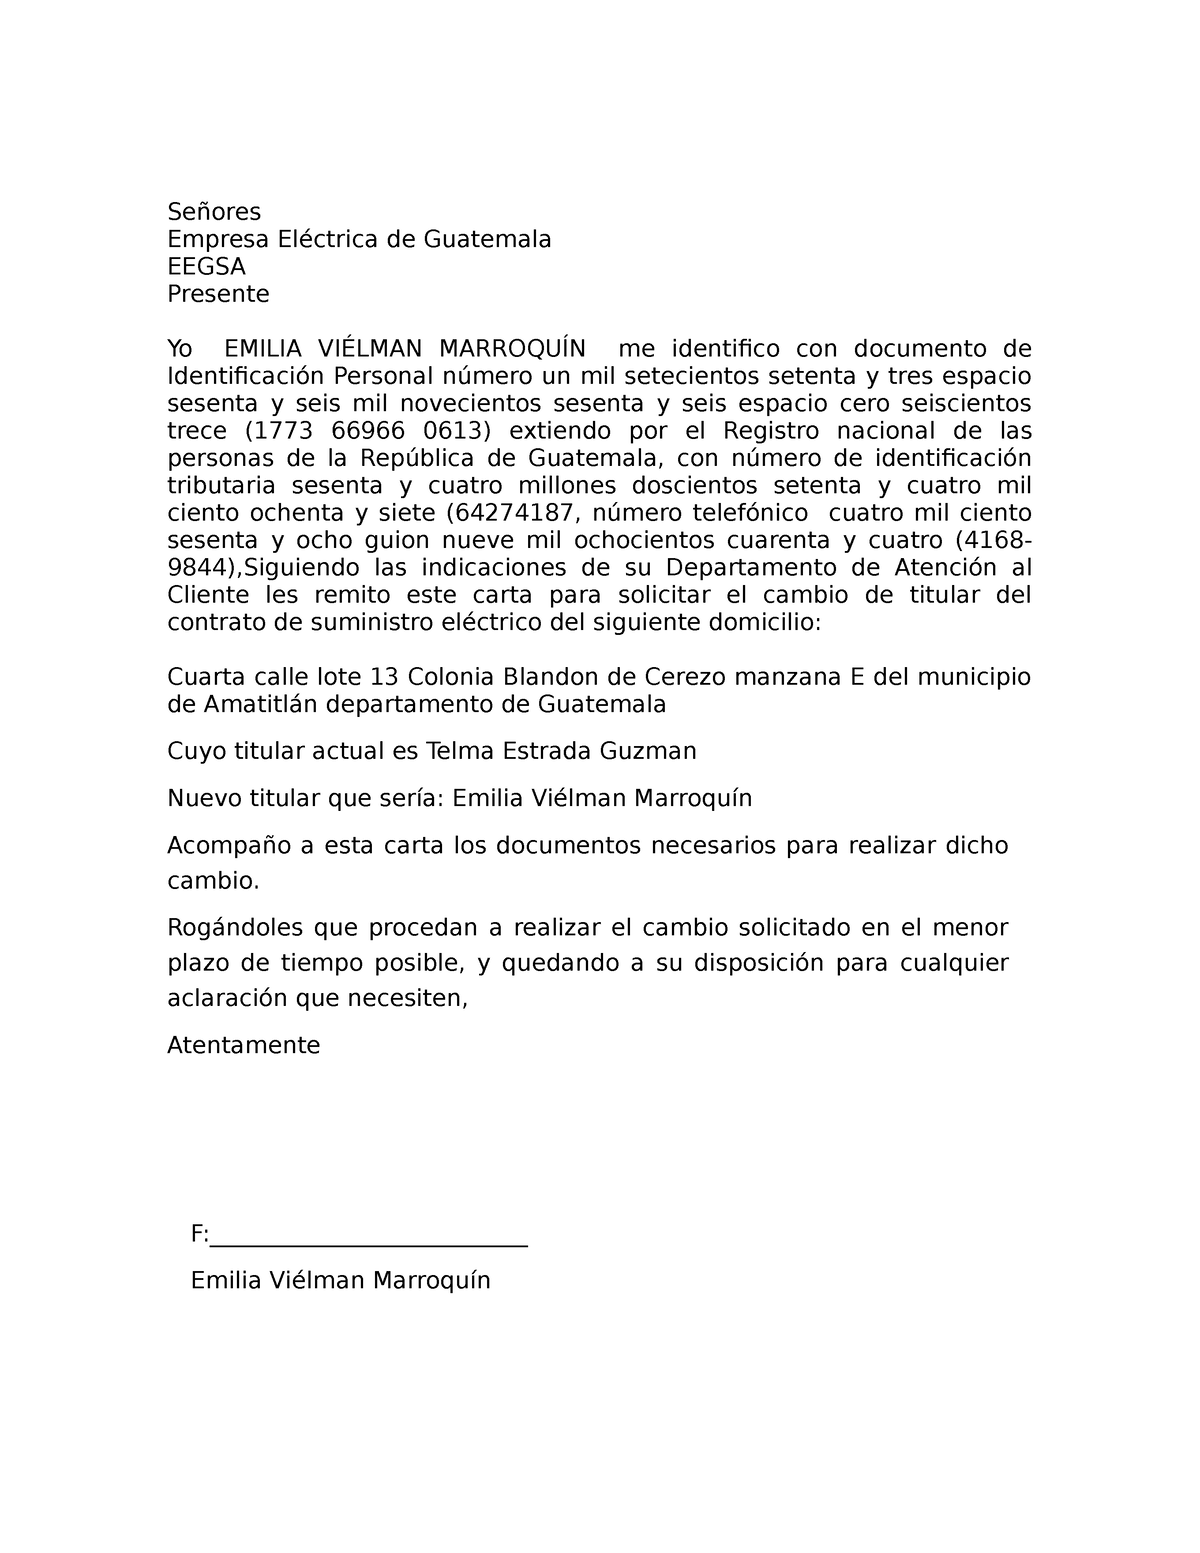 Carta De Solicitud De Cambio De Servicio De Luz Señores Empresa